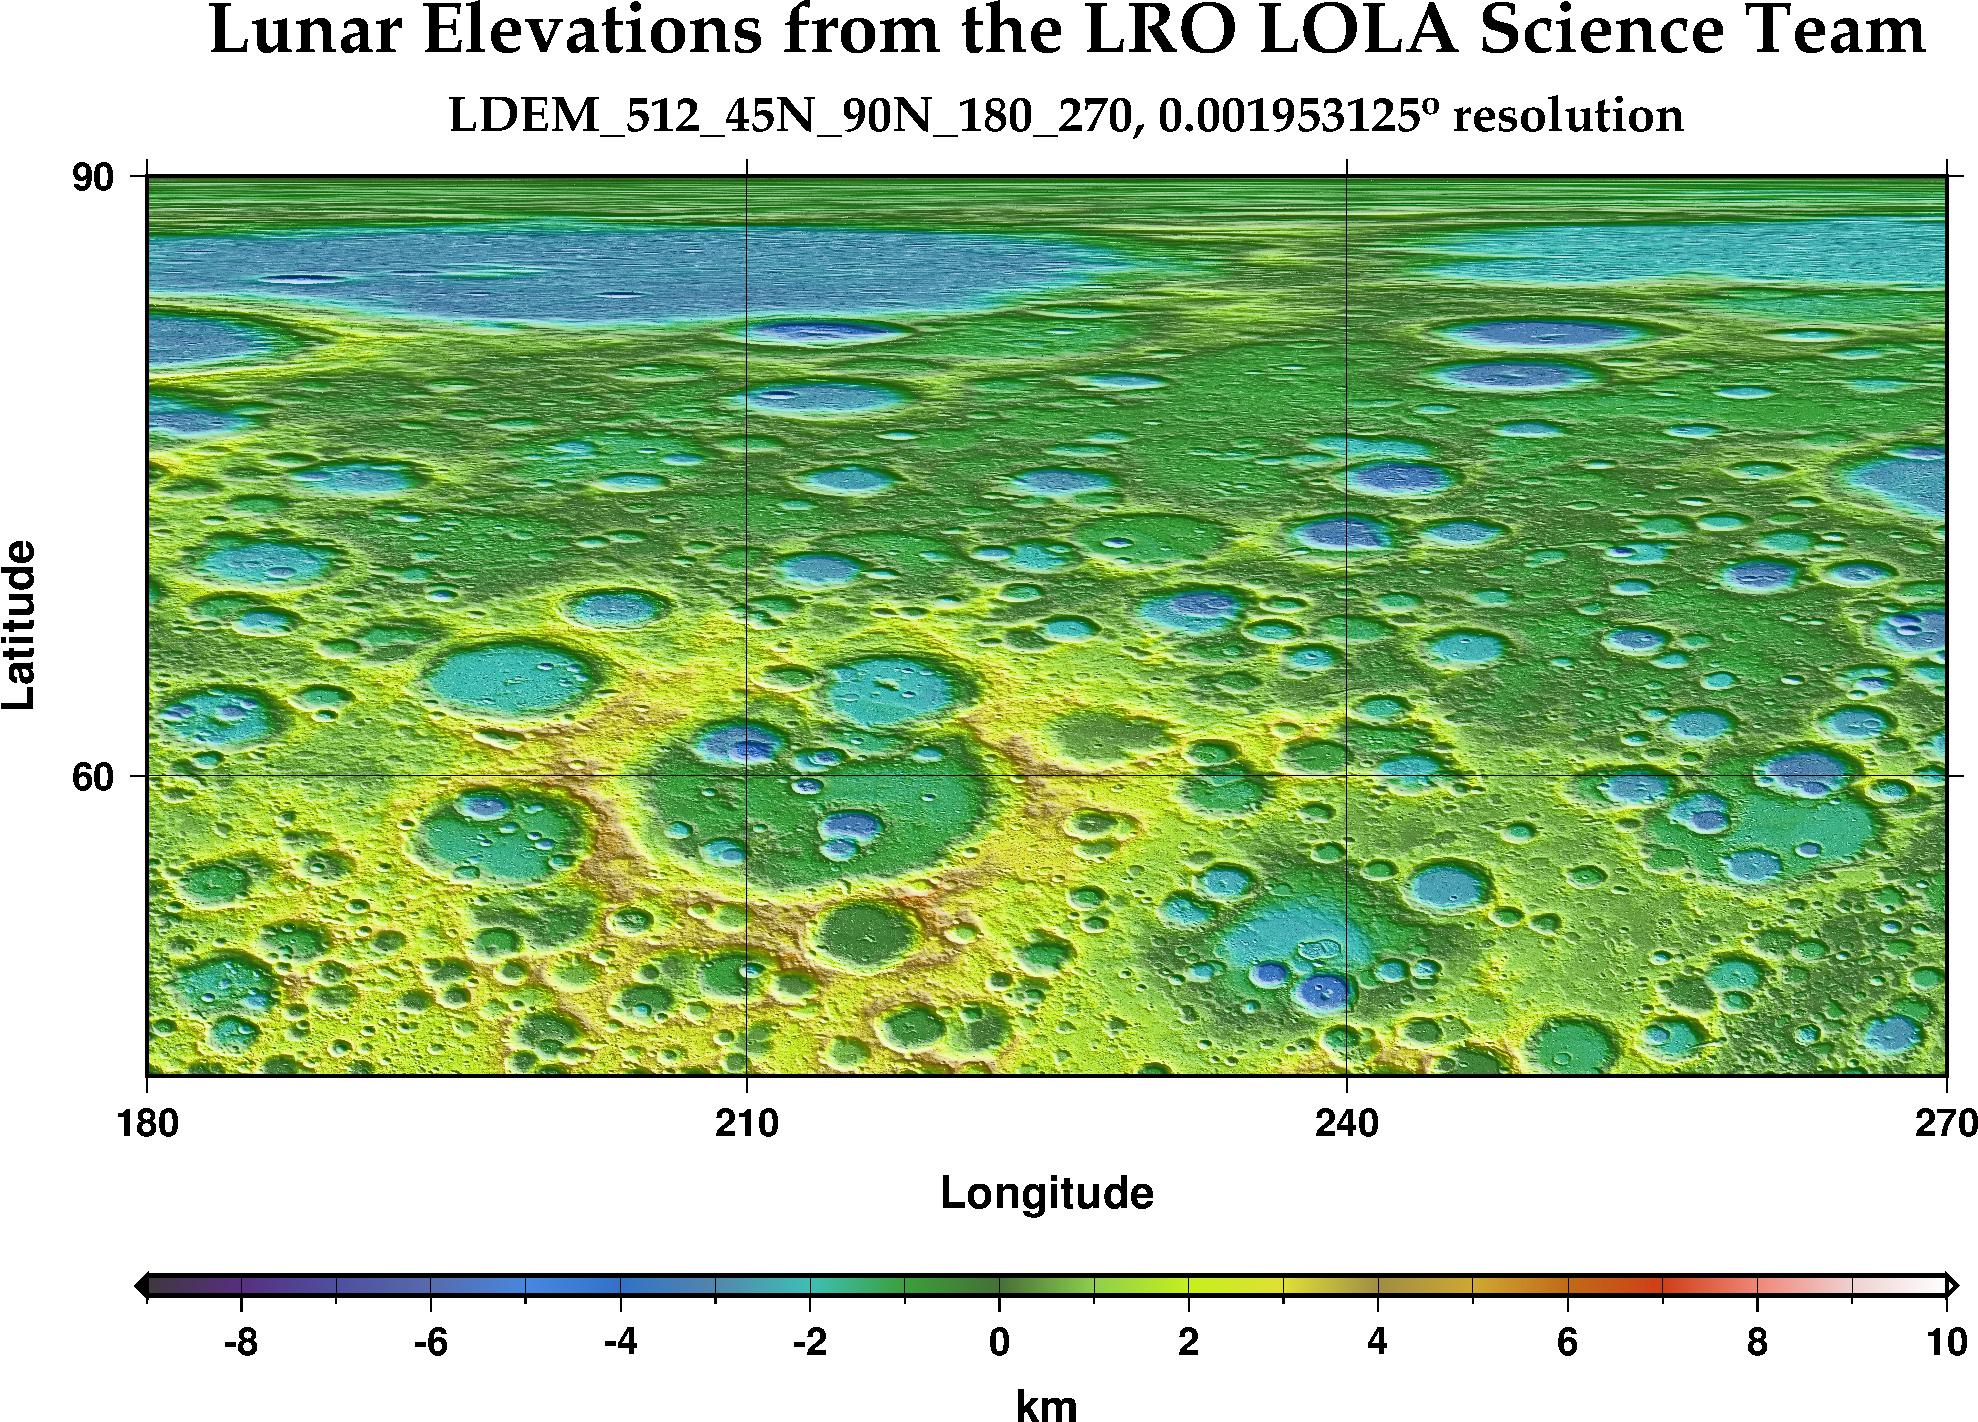 image of lunar topography for LDEM_512_45N_90N_180_270.JPG